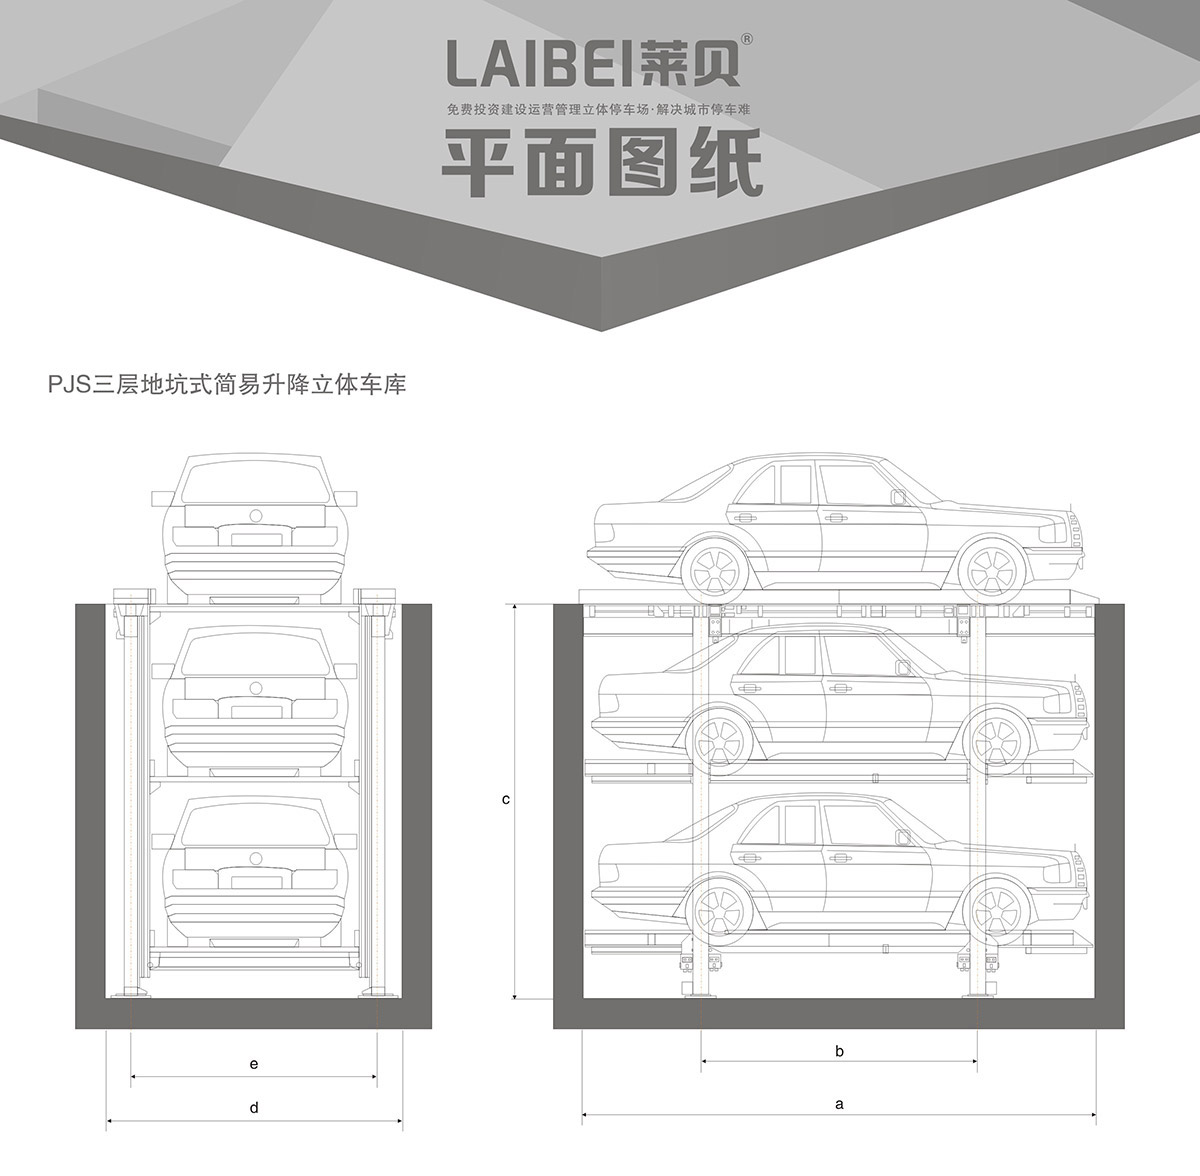 重庆PJS3-D2三层地坑简易升降立体停车设备平面图纸.jpg